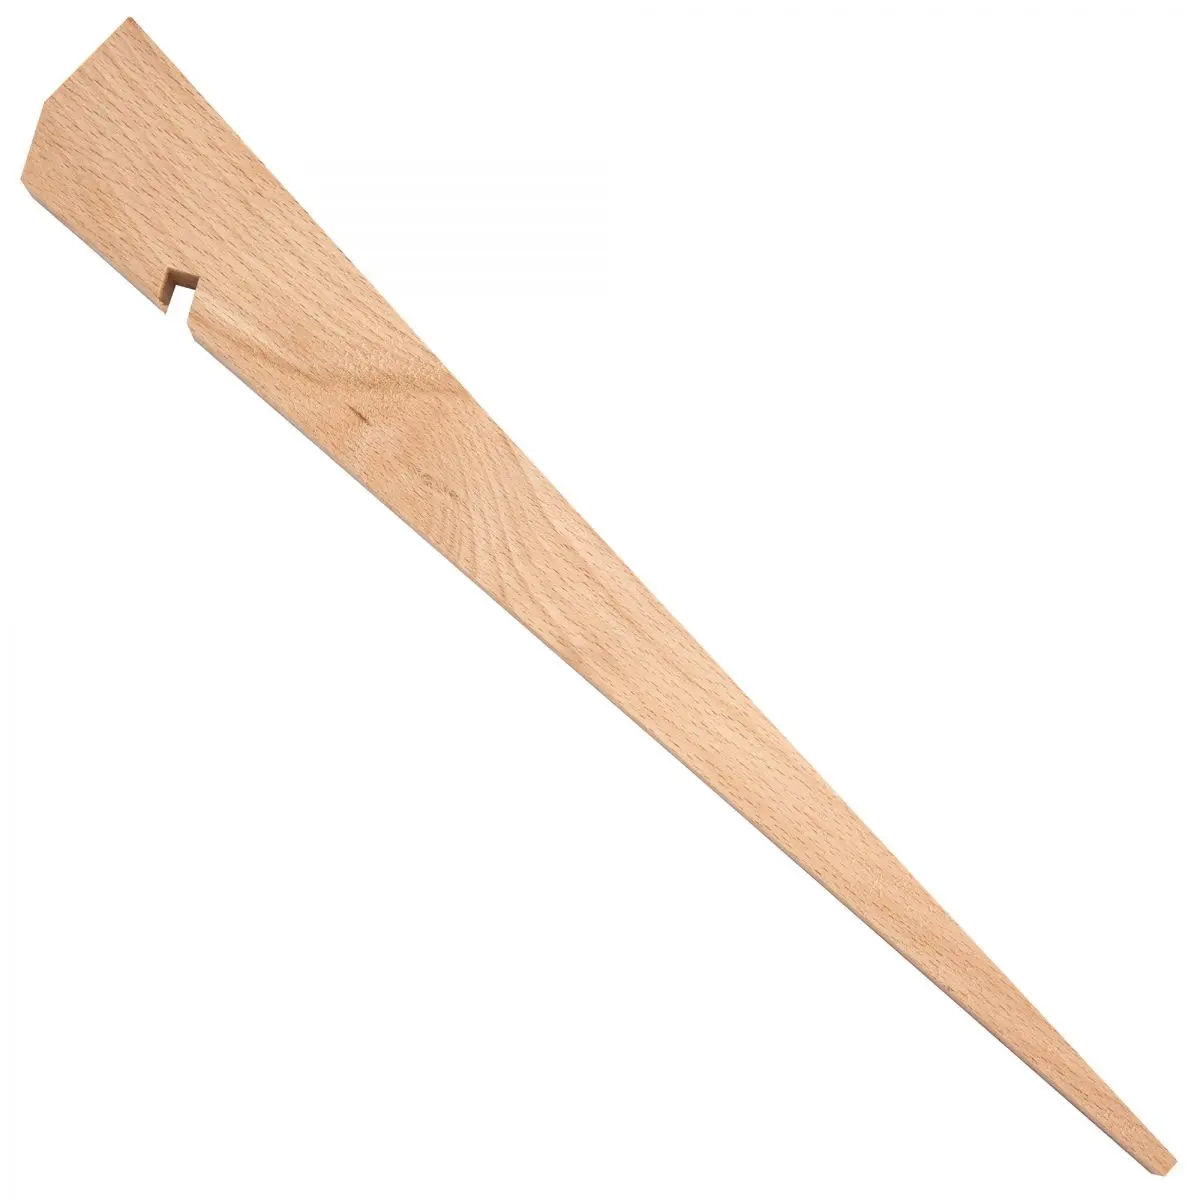 Cuie din lemn - 40 cm, ambalaj autoservire 4 buc